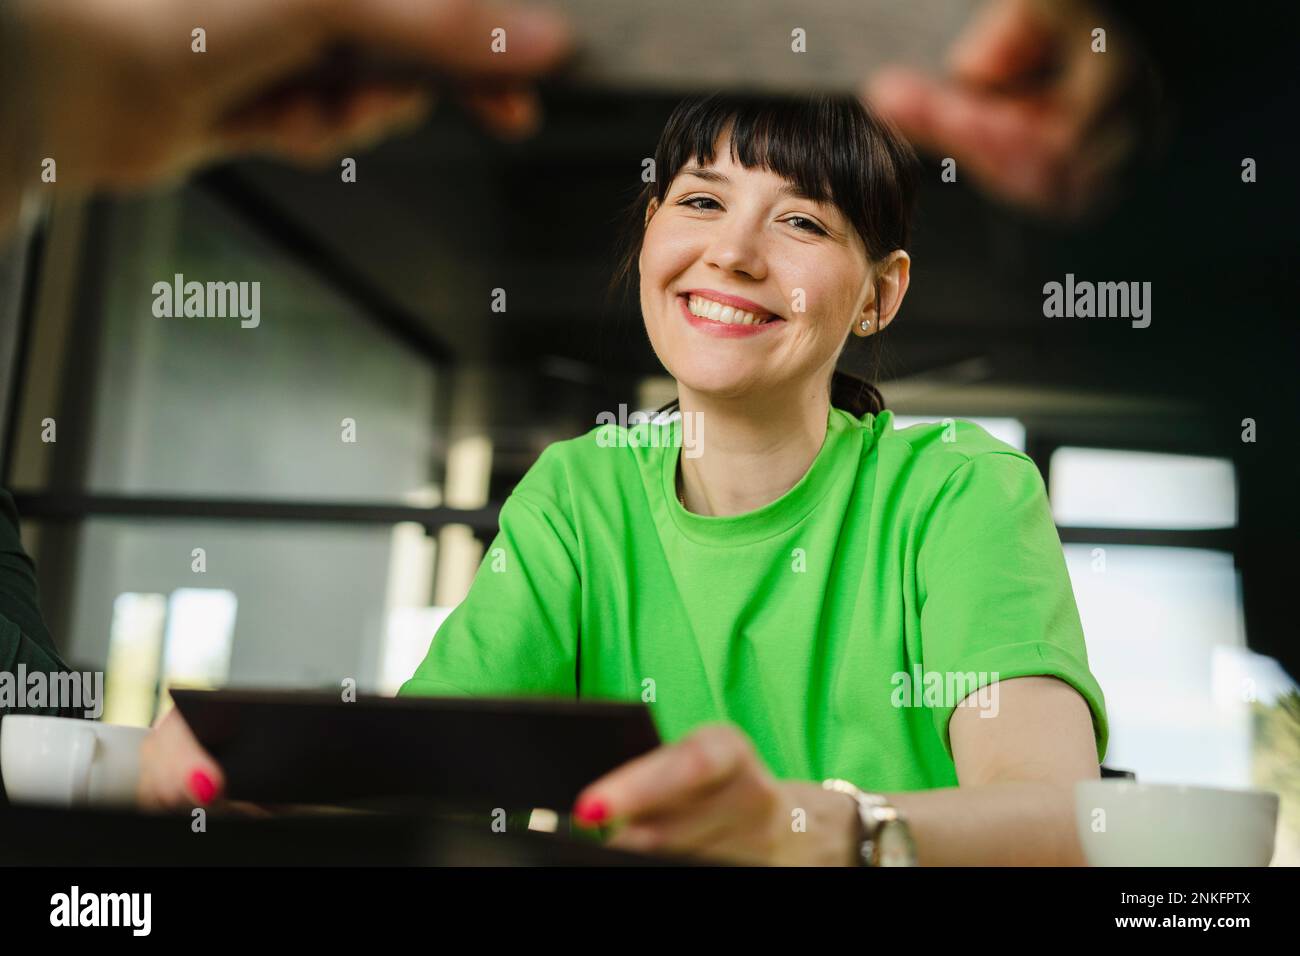 Mujer sonriente con camiseta verde en la oficina Foto de stock